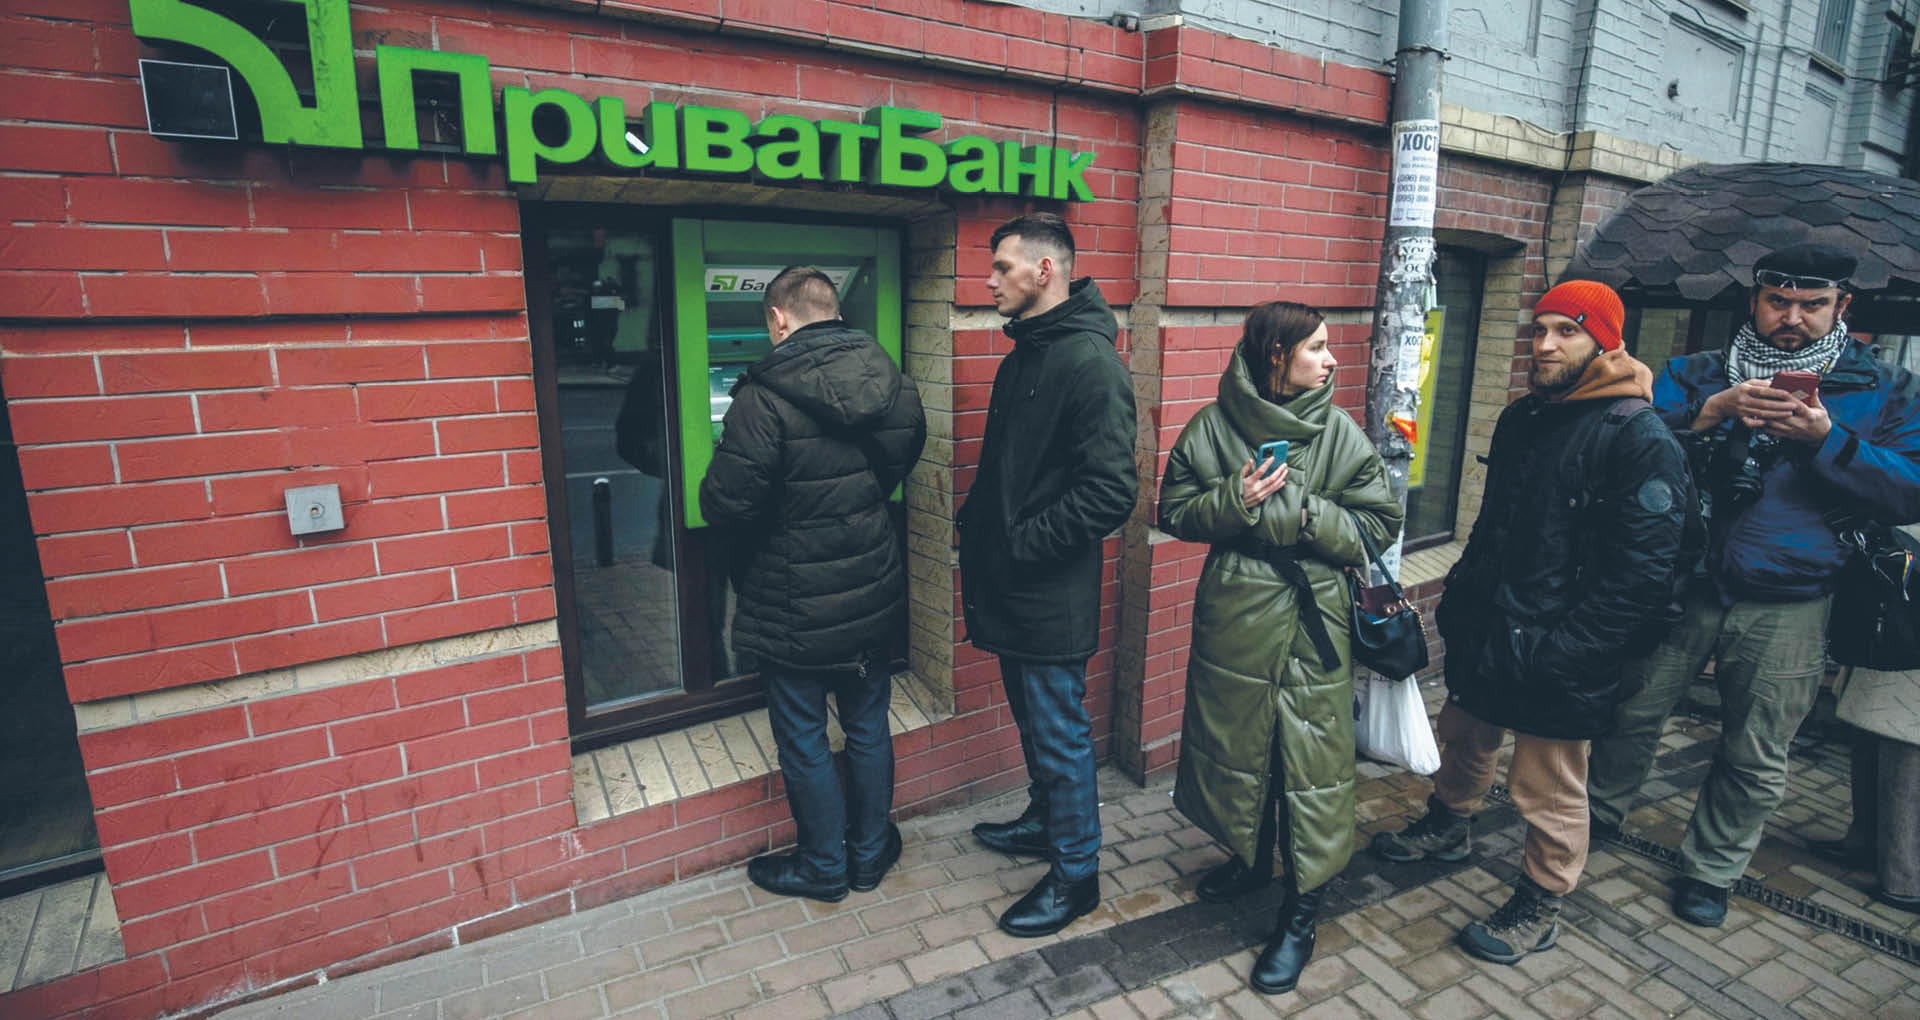 Kolejka do bankomatu PrywatBanku, największego i najzyskowniejszego banku Ukrainy, kilka lat temu odebranego oligarchom. Kijów, 24 lutego 2022 r.